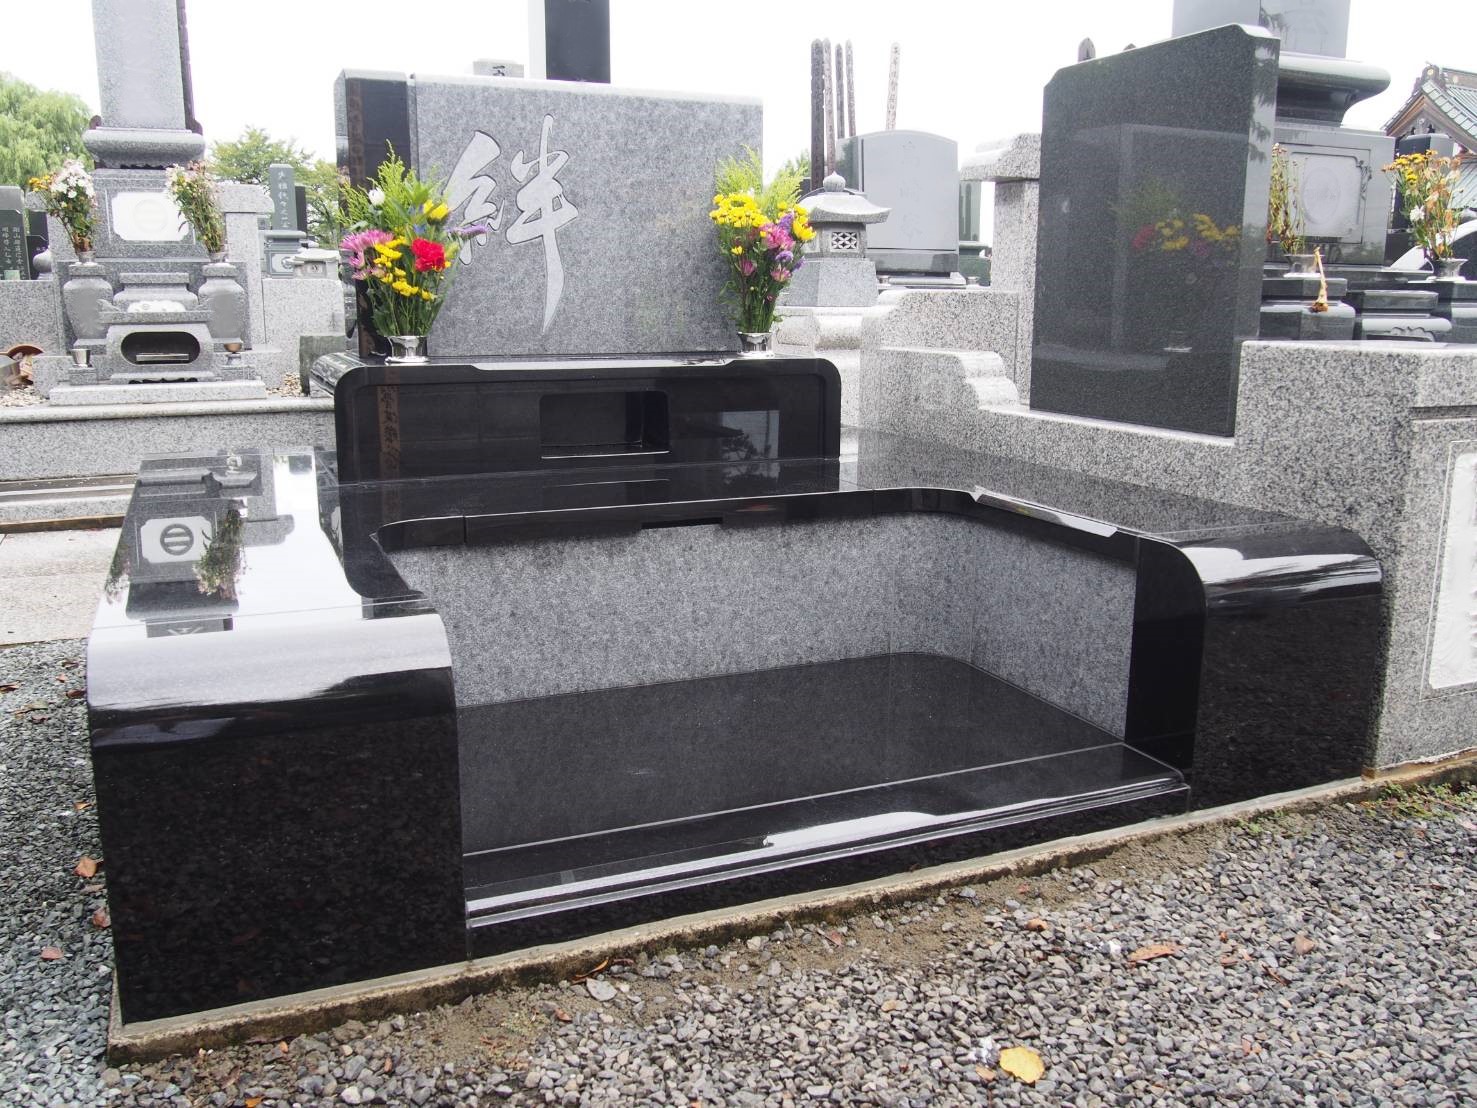 世界最高級白御影石の庵治石と世界最高級黒御影石のスウェーデンファイングレーを使用した贅沢なデザイン墓石の施工例